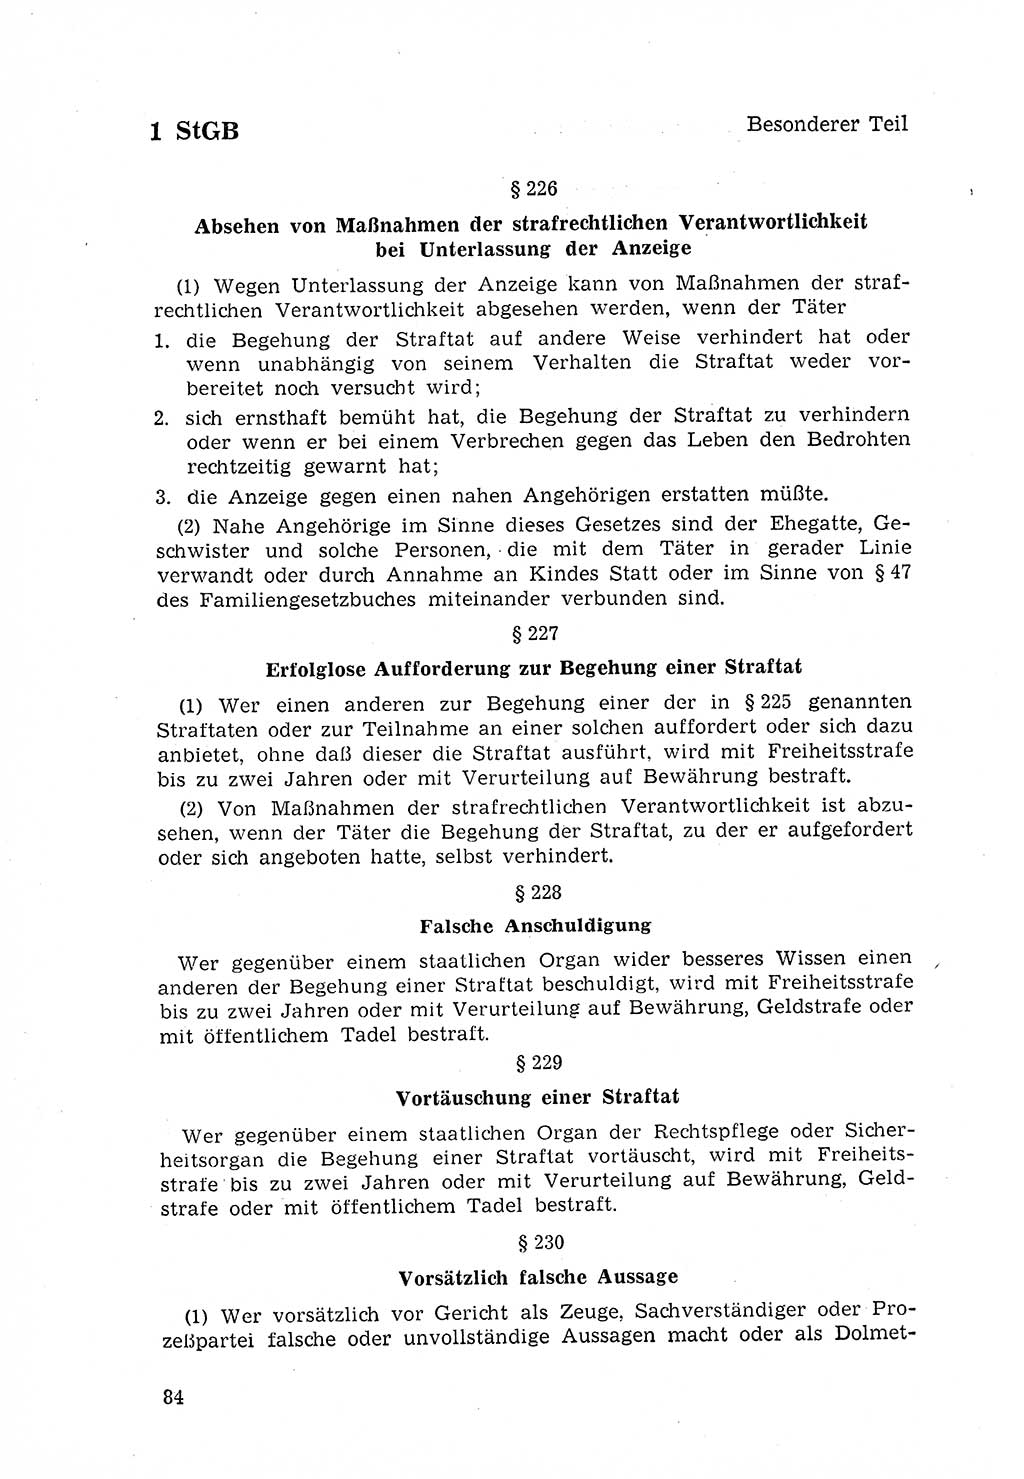 Strafgesetzbuch (StGB) der Deutschen Demokratischen Republik (DDR) 1968, Seite 84 (StGB DDR 1968, S. 84)